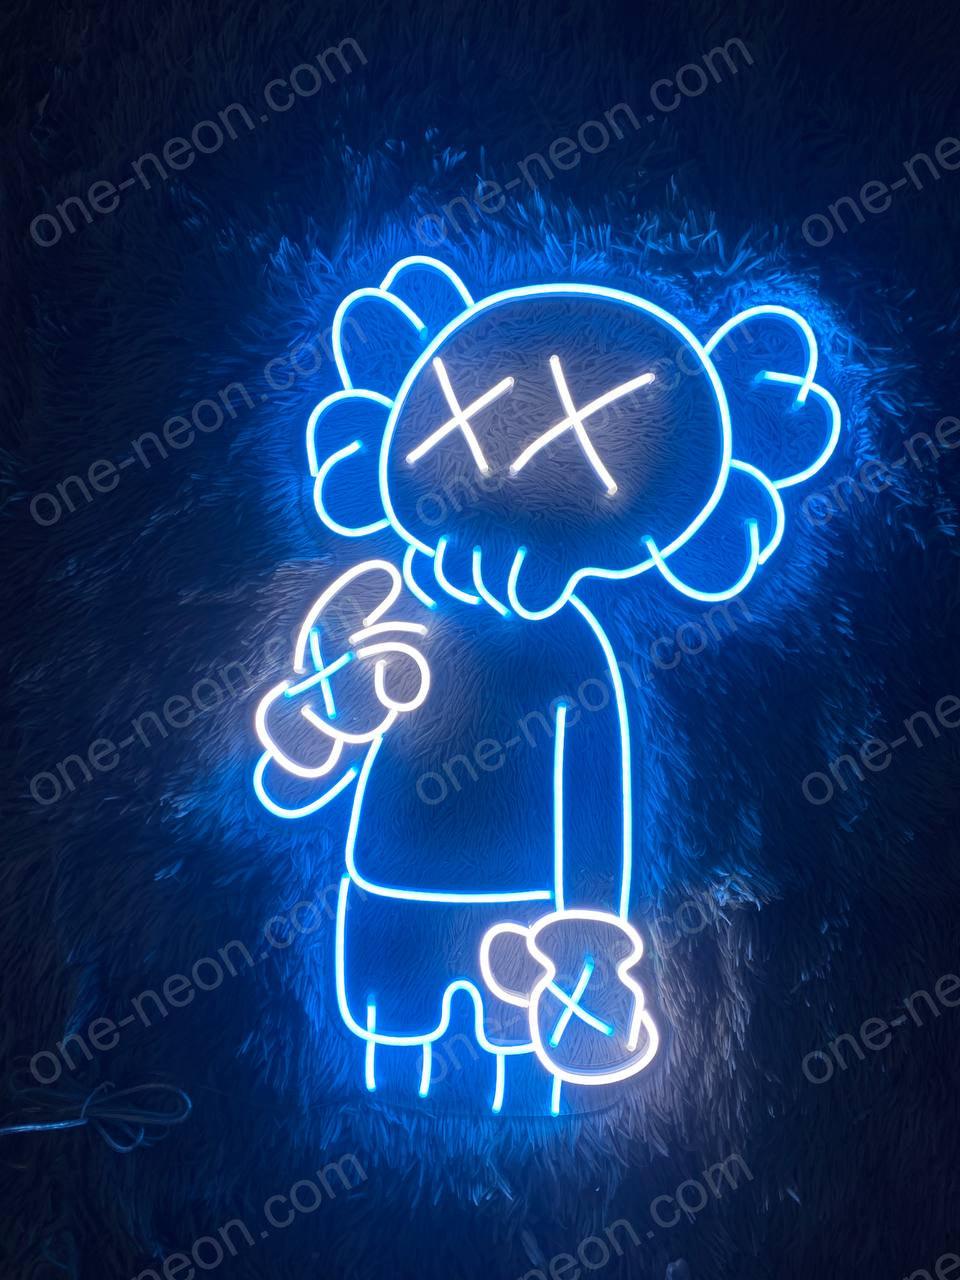 Sitting KAWS Supreme, LED Neon Sign (UV Printed)